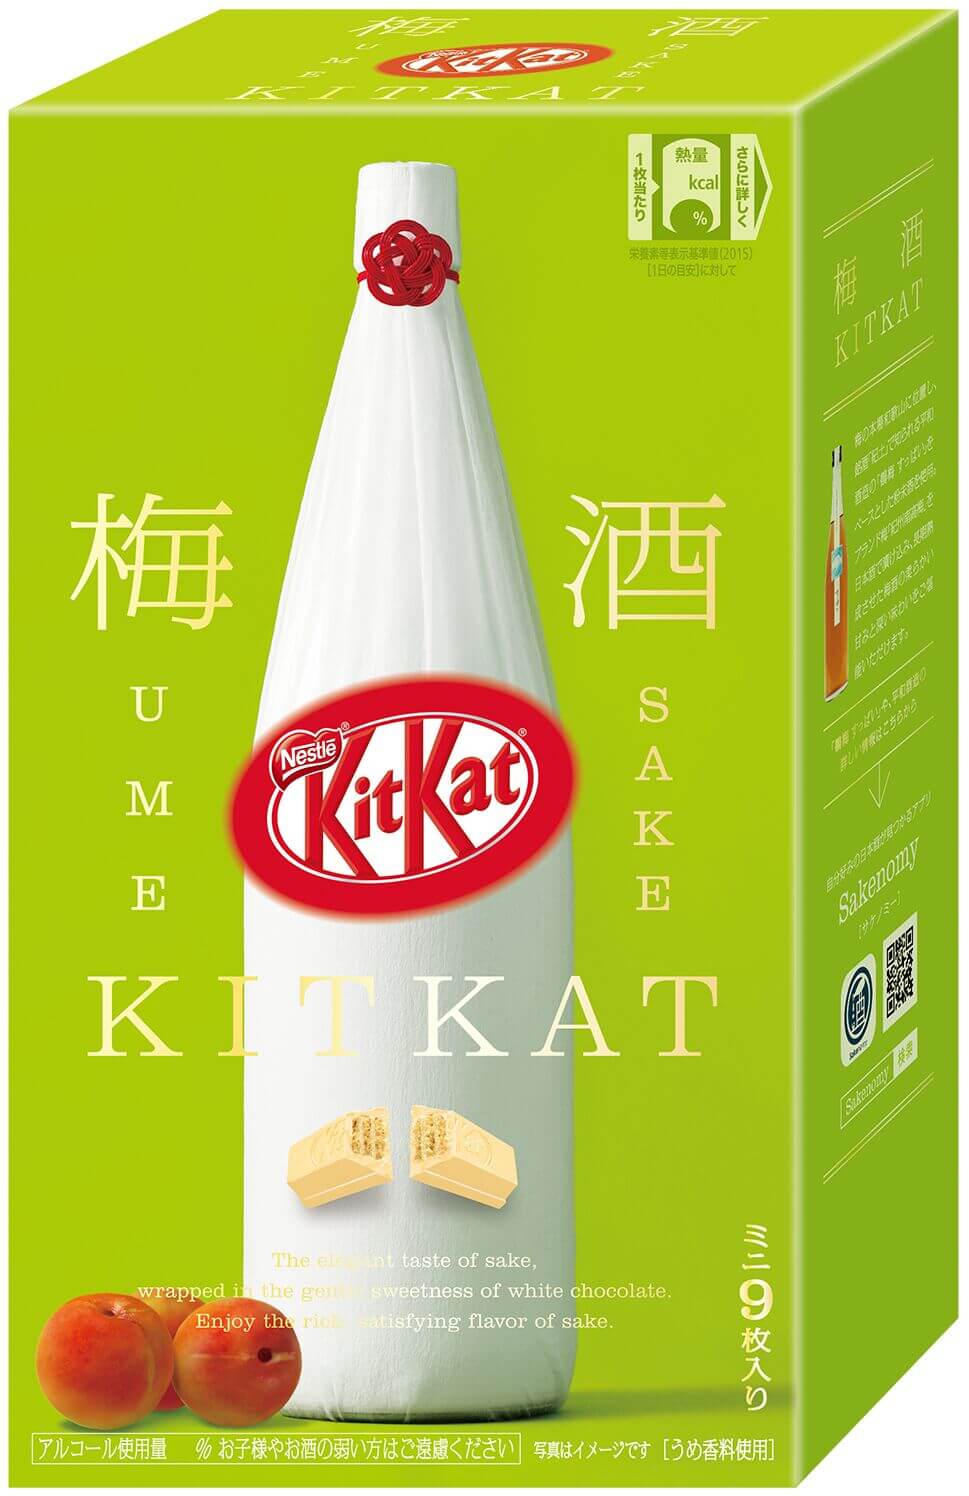 craft-sake-week-kitkat-bar4-2